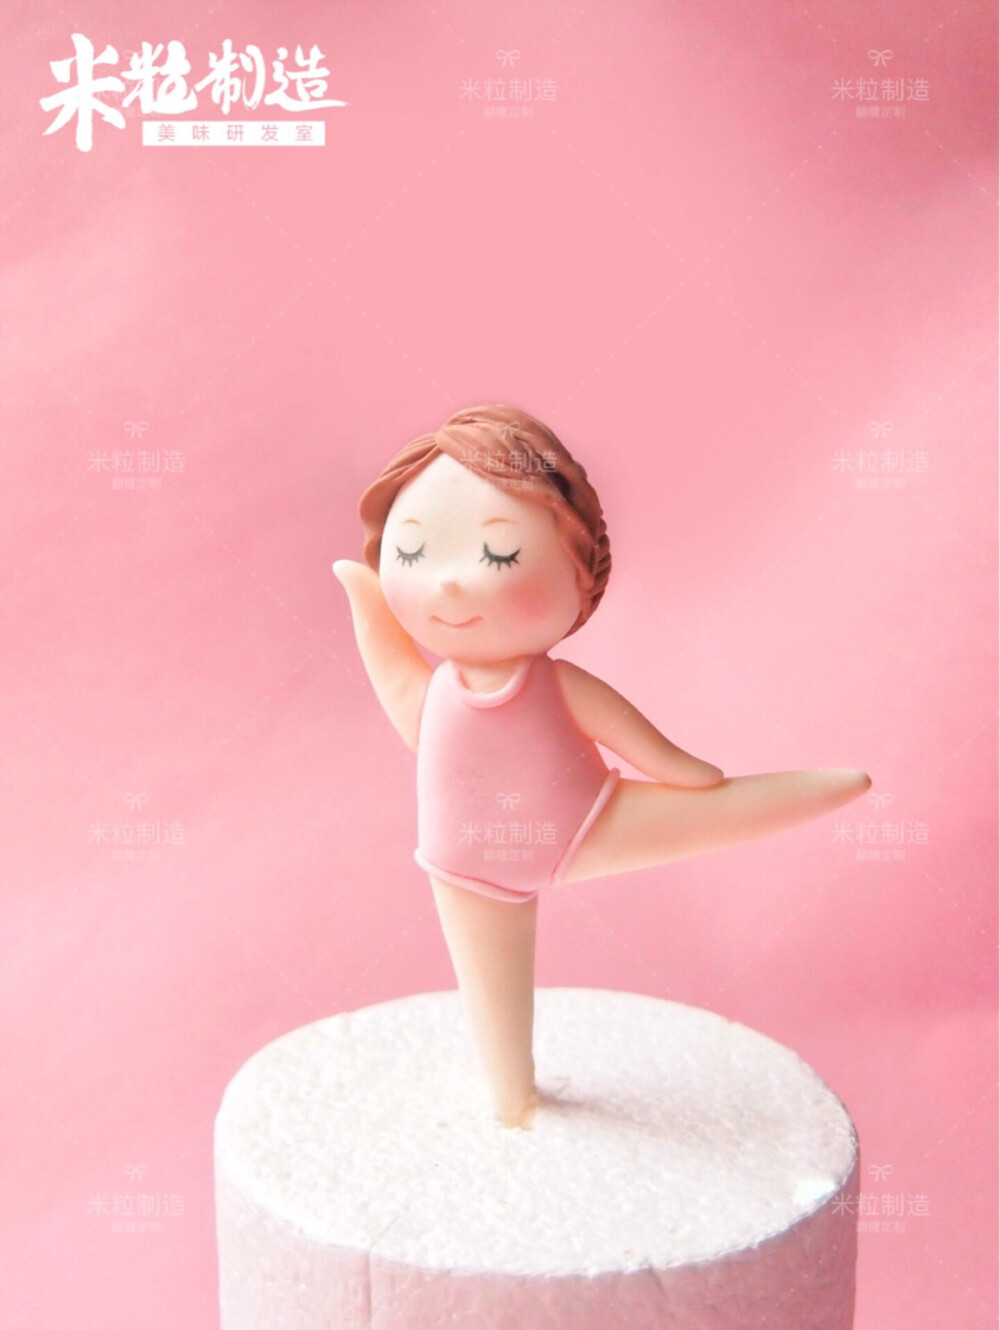 翻糖蛋糕 翻糖人偶 芭蕾舞女孩